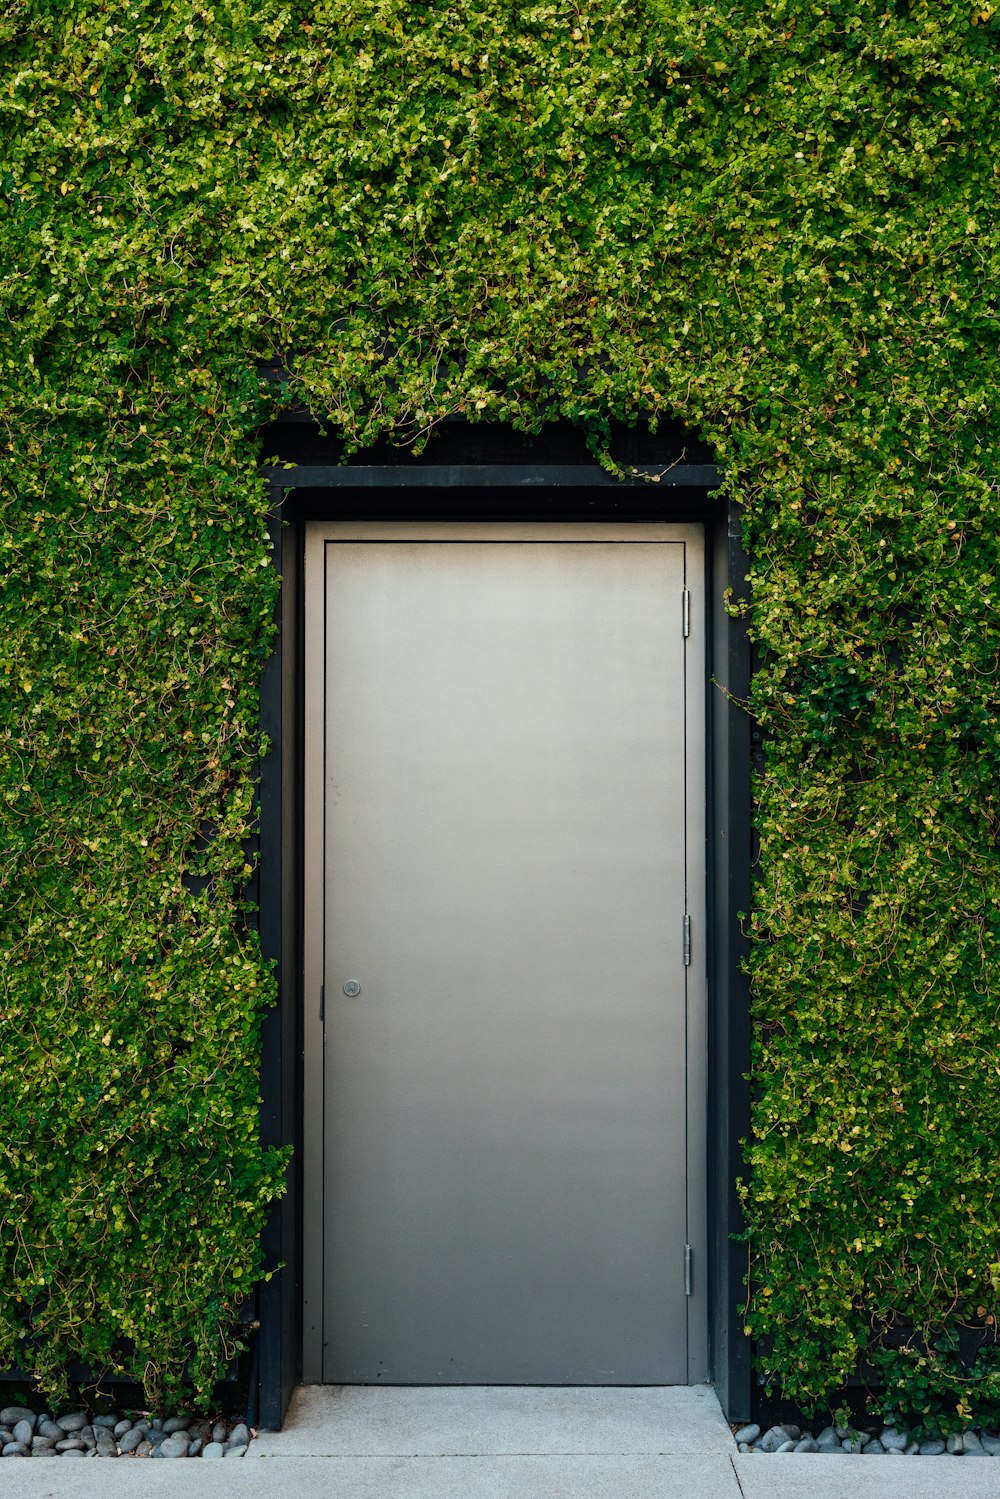 문은 녹색 벽으로 둘러싸여 있습니다